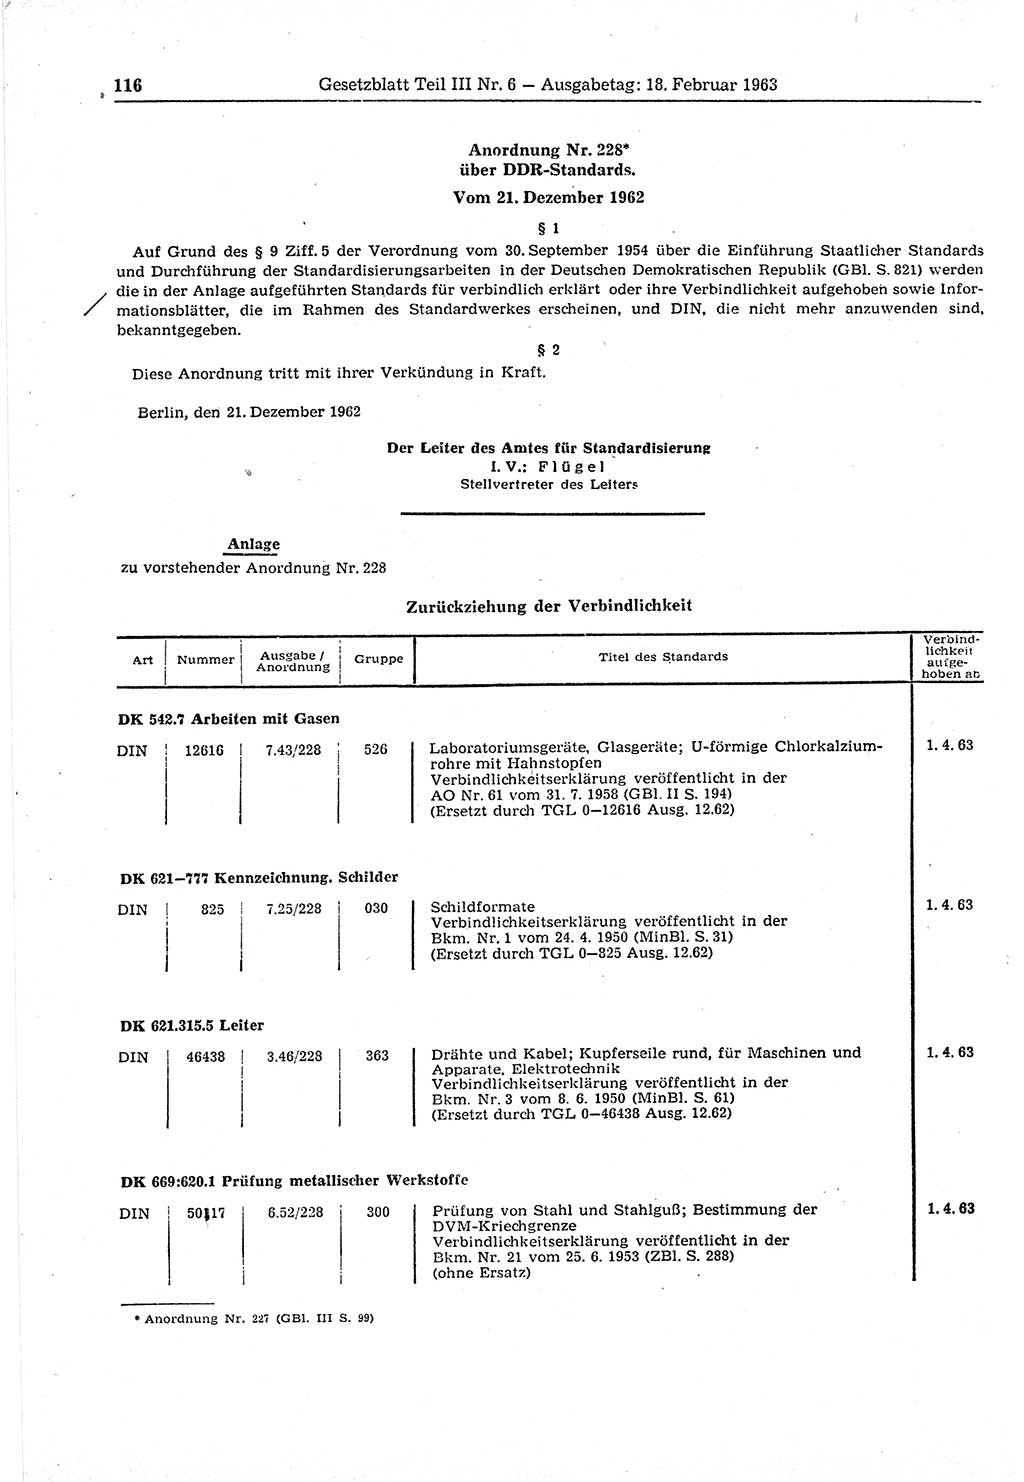 Gesetzblatt (GBl.) der Deutschen Demokratischen Republik (DDR) Teil ⅠⅠⅠ 1963, Seite 116 (GBl. DDR ⅠⅠⅠ 1963, S. 116)